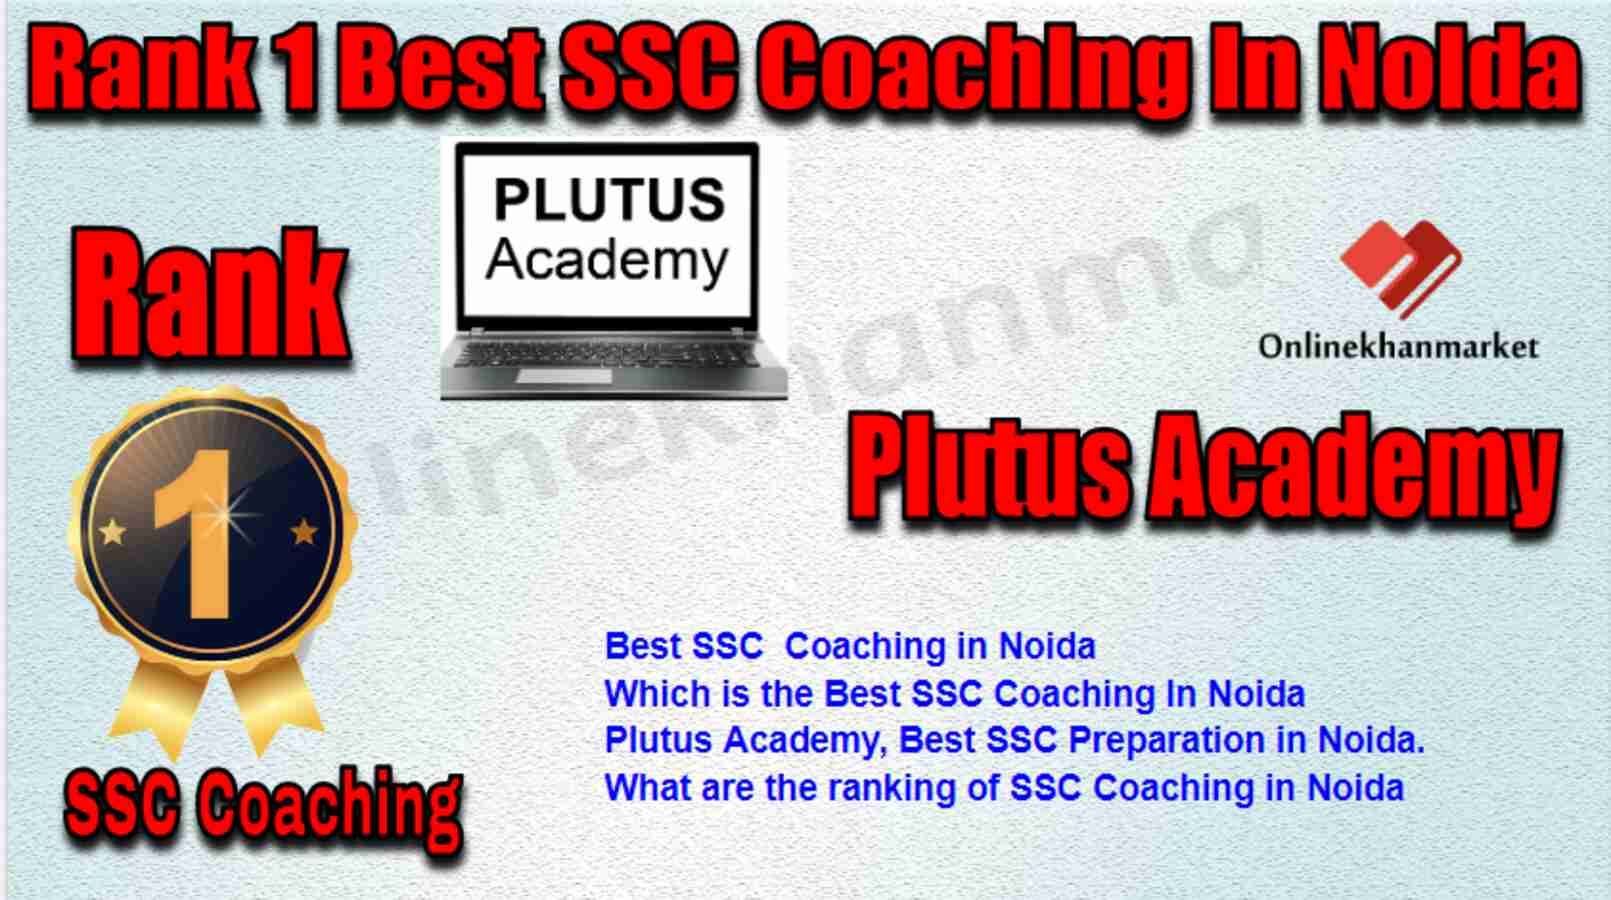 Rank 1 Best SSC Coaching in Noida